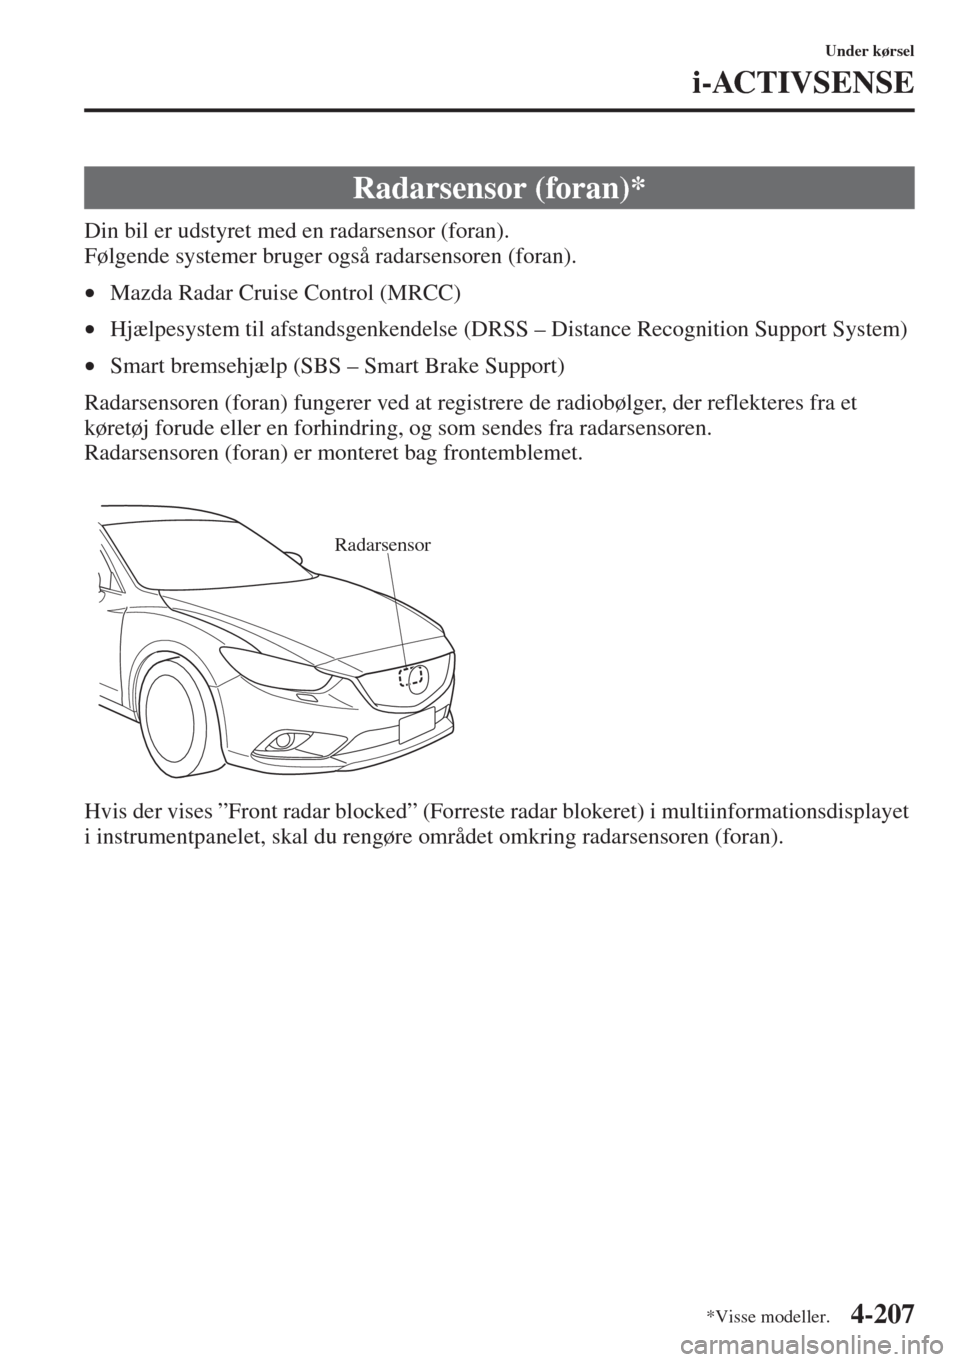 MAZDA MODEL 6 2015  Instruktionsbog (in Danish) 4-207
Under kørsel
i-ACTIVSENSE
Din bil er udstyret med en radarsensor (foran).
Følgende systemer bruger også radarsensoren (foran).
•Mazda Radar Cruise Control (MRCC)
•Hjælpesystem til afstan